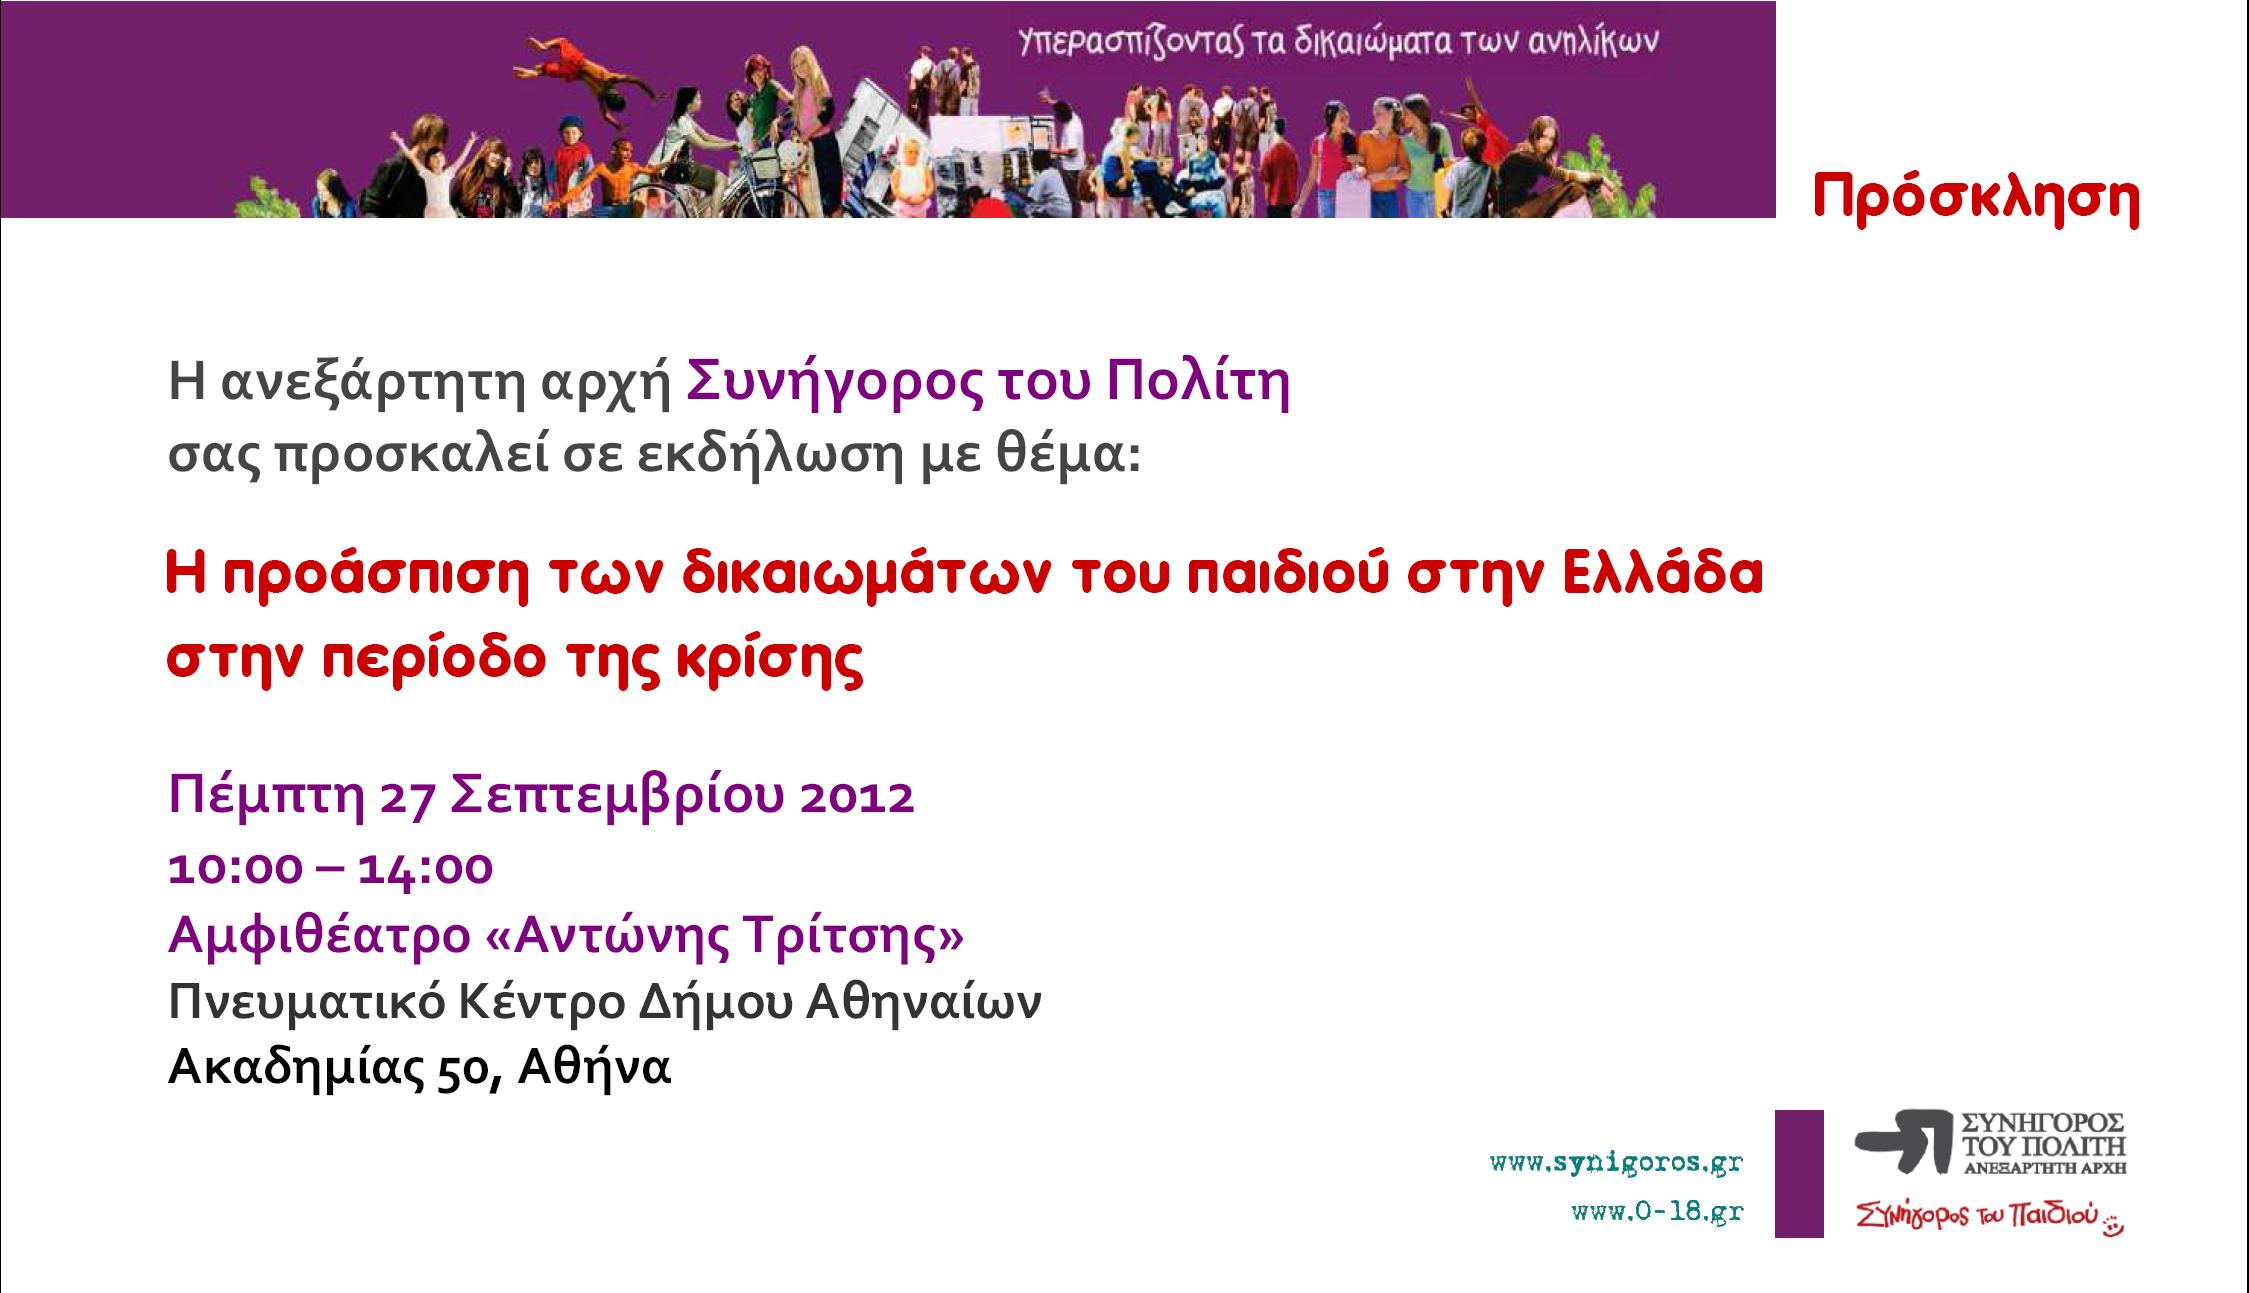 Συνήγορος του Πολίτη – Εκδήλωση "Η προάσπιση των δικαιωμάτων του παιδιού στην Ελλάδα, στην περίοδο της κρίσης"